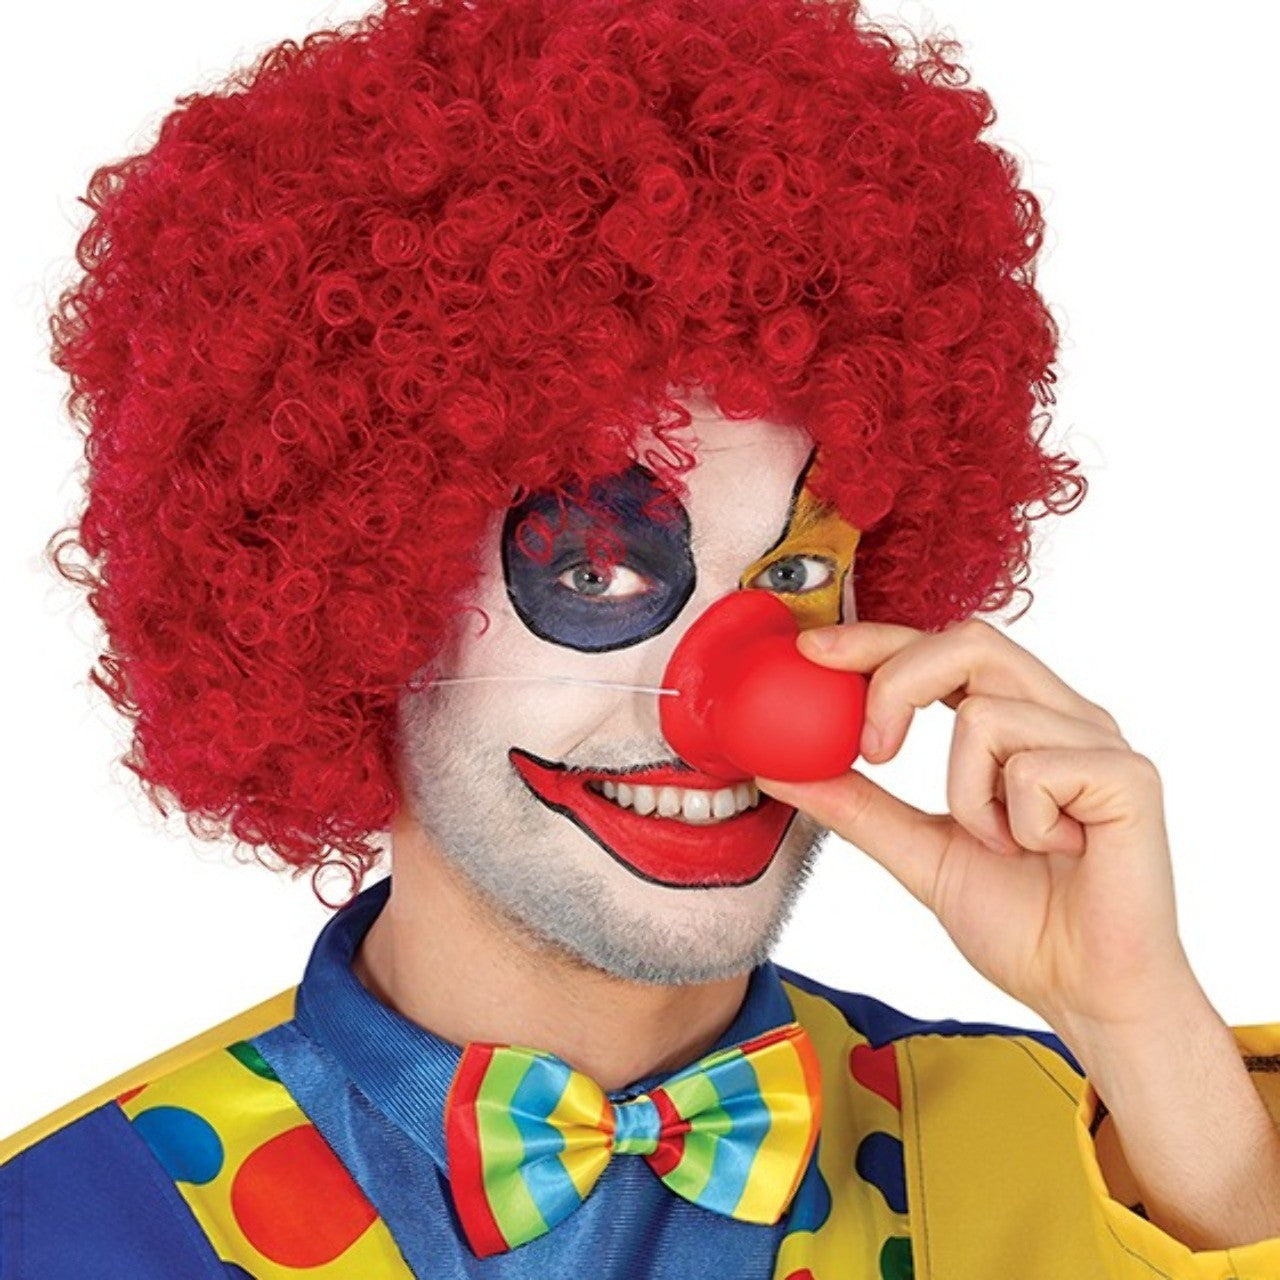 Naso Da Clown fotografia stock. Immagine di costume - 164259306